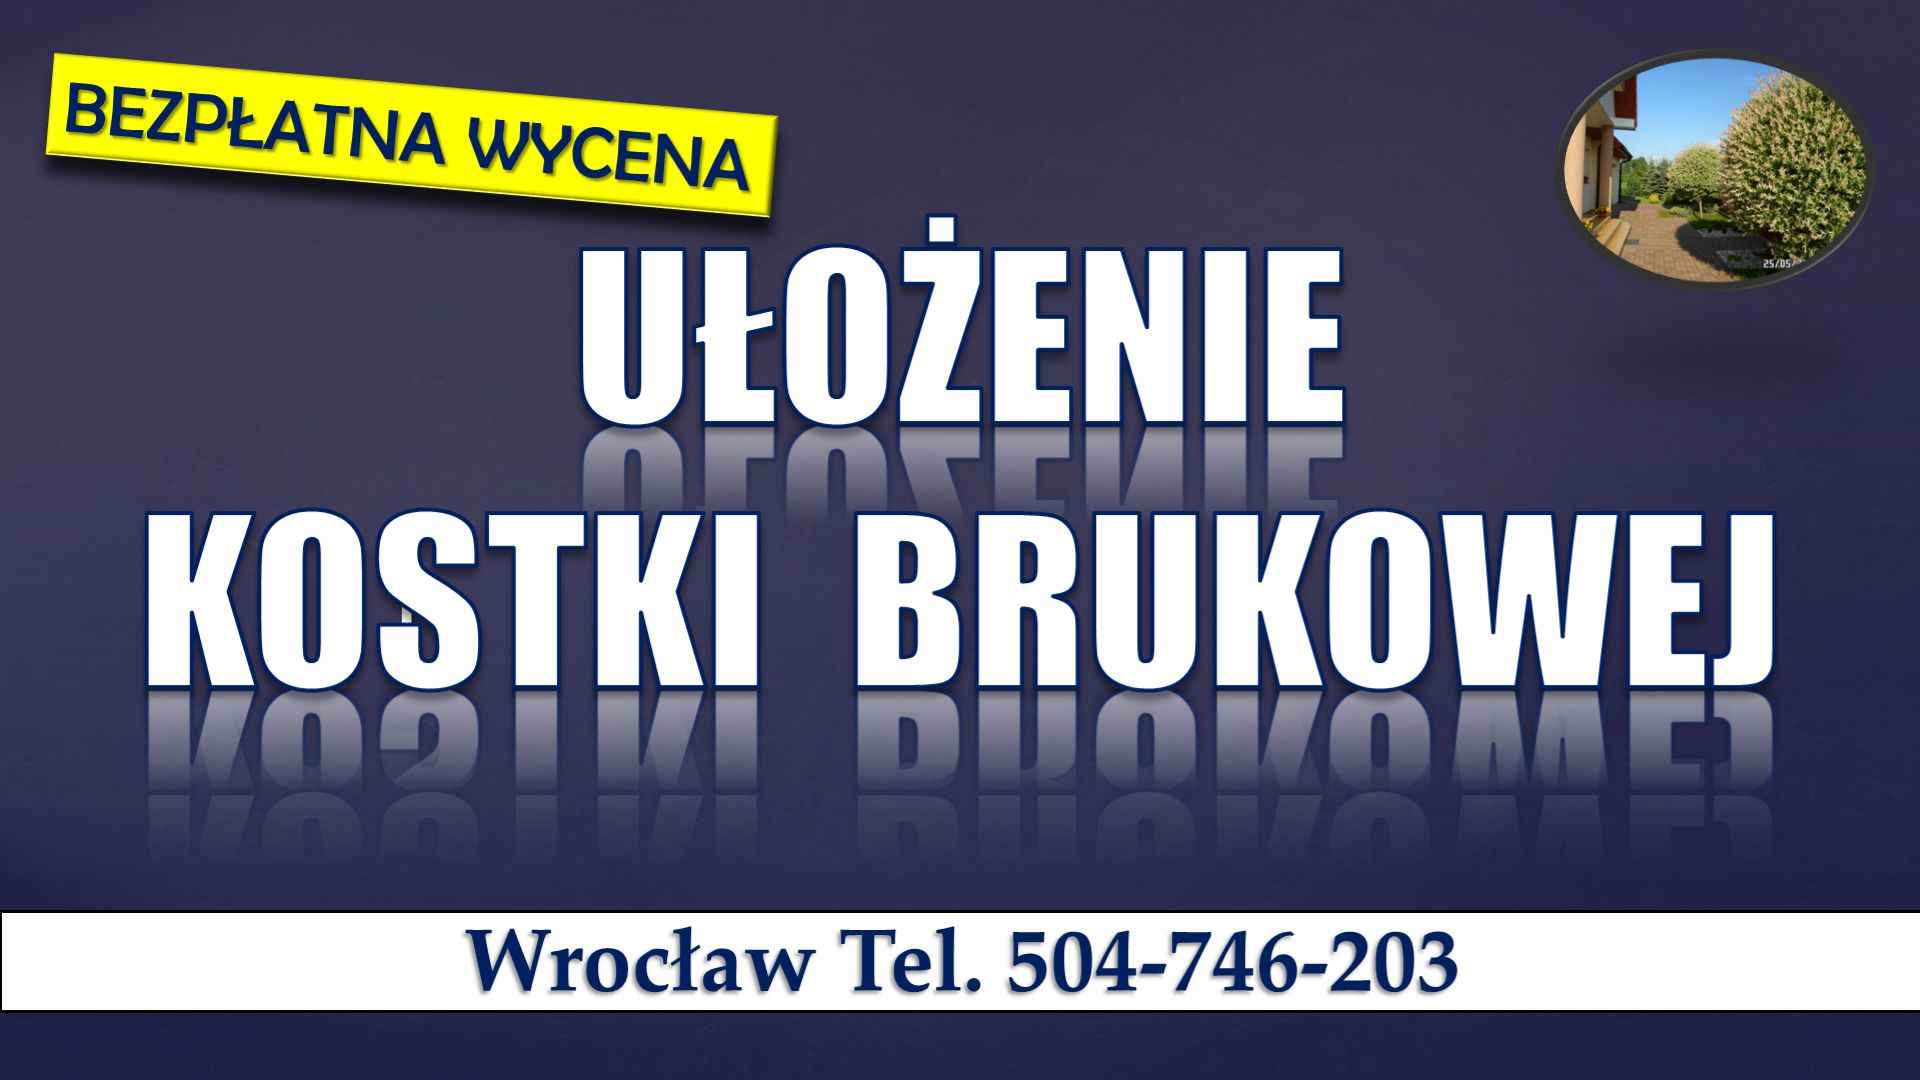 Układanie kostki brukowej Wrocław, tel. 504-746-203. Cennik usługi. Psie Pole - zdjęcie 8